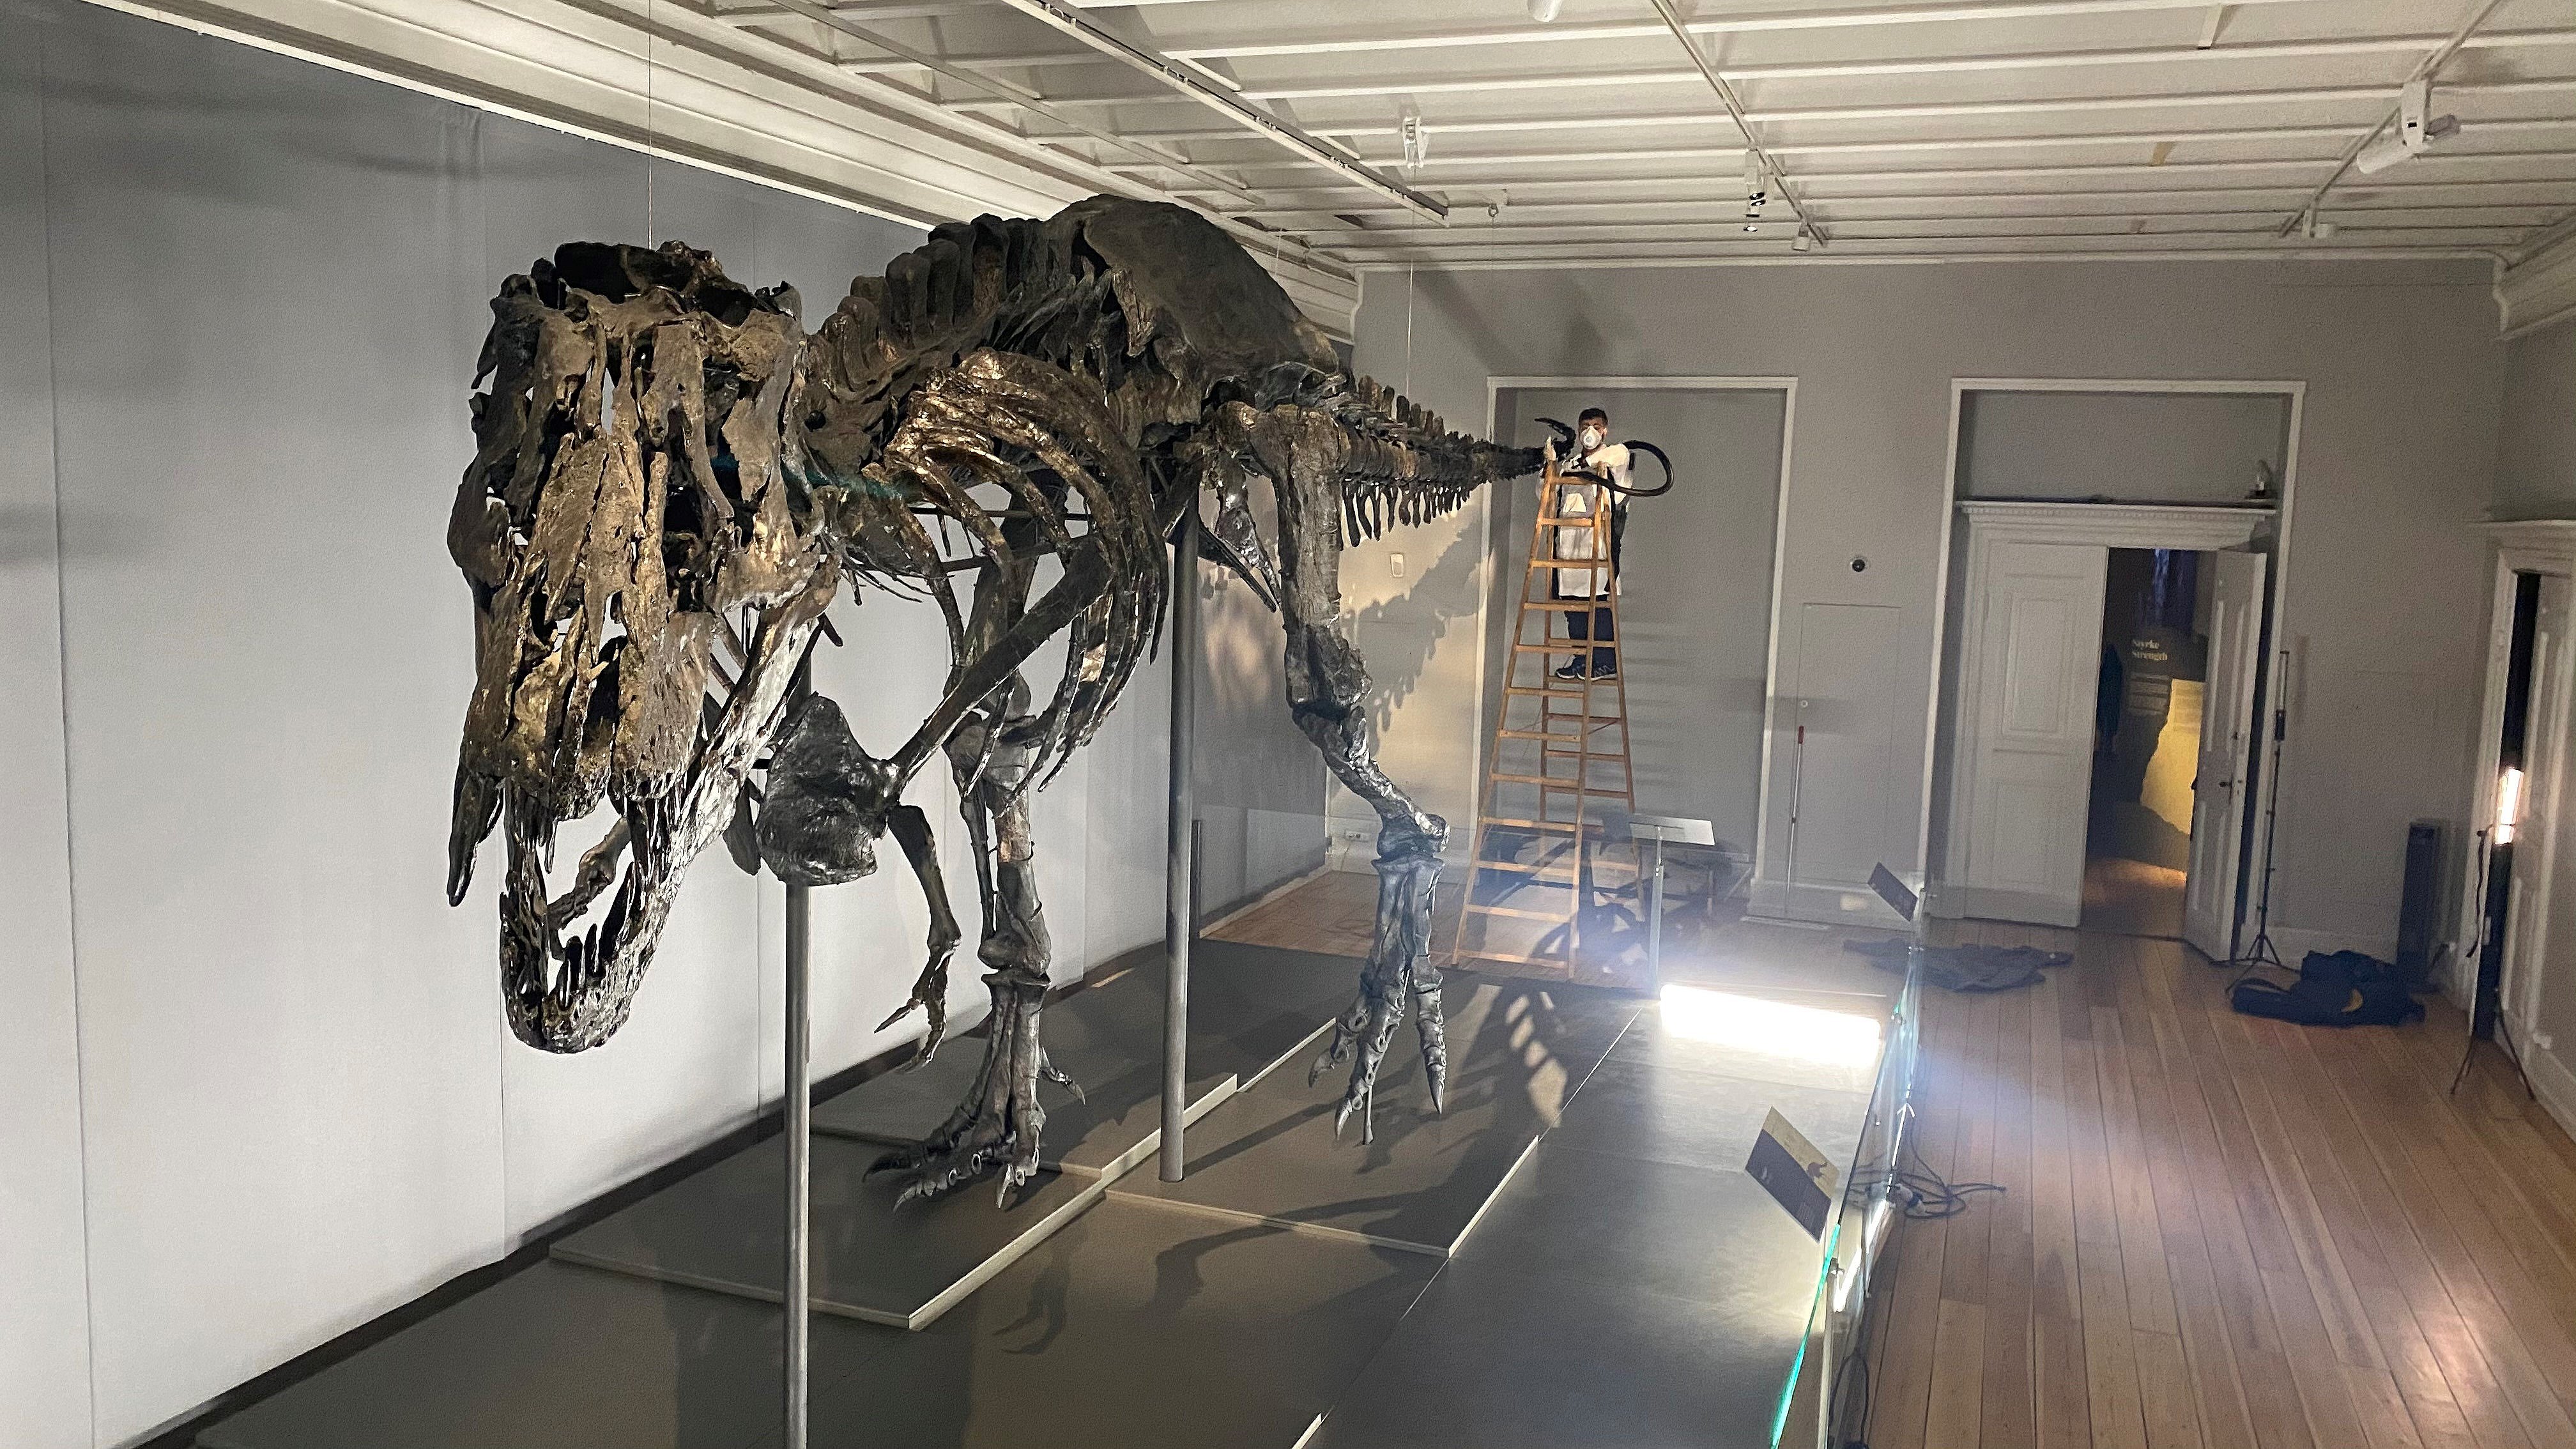 Ud fup læser Abdi støvsuger en Tyrannosaurus rex: "Jeg er simpelthen så privilegeret!" |  TV 2 Lorry